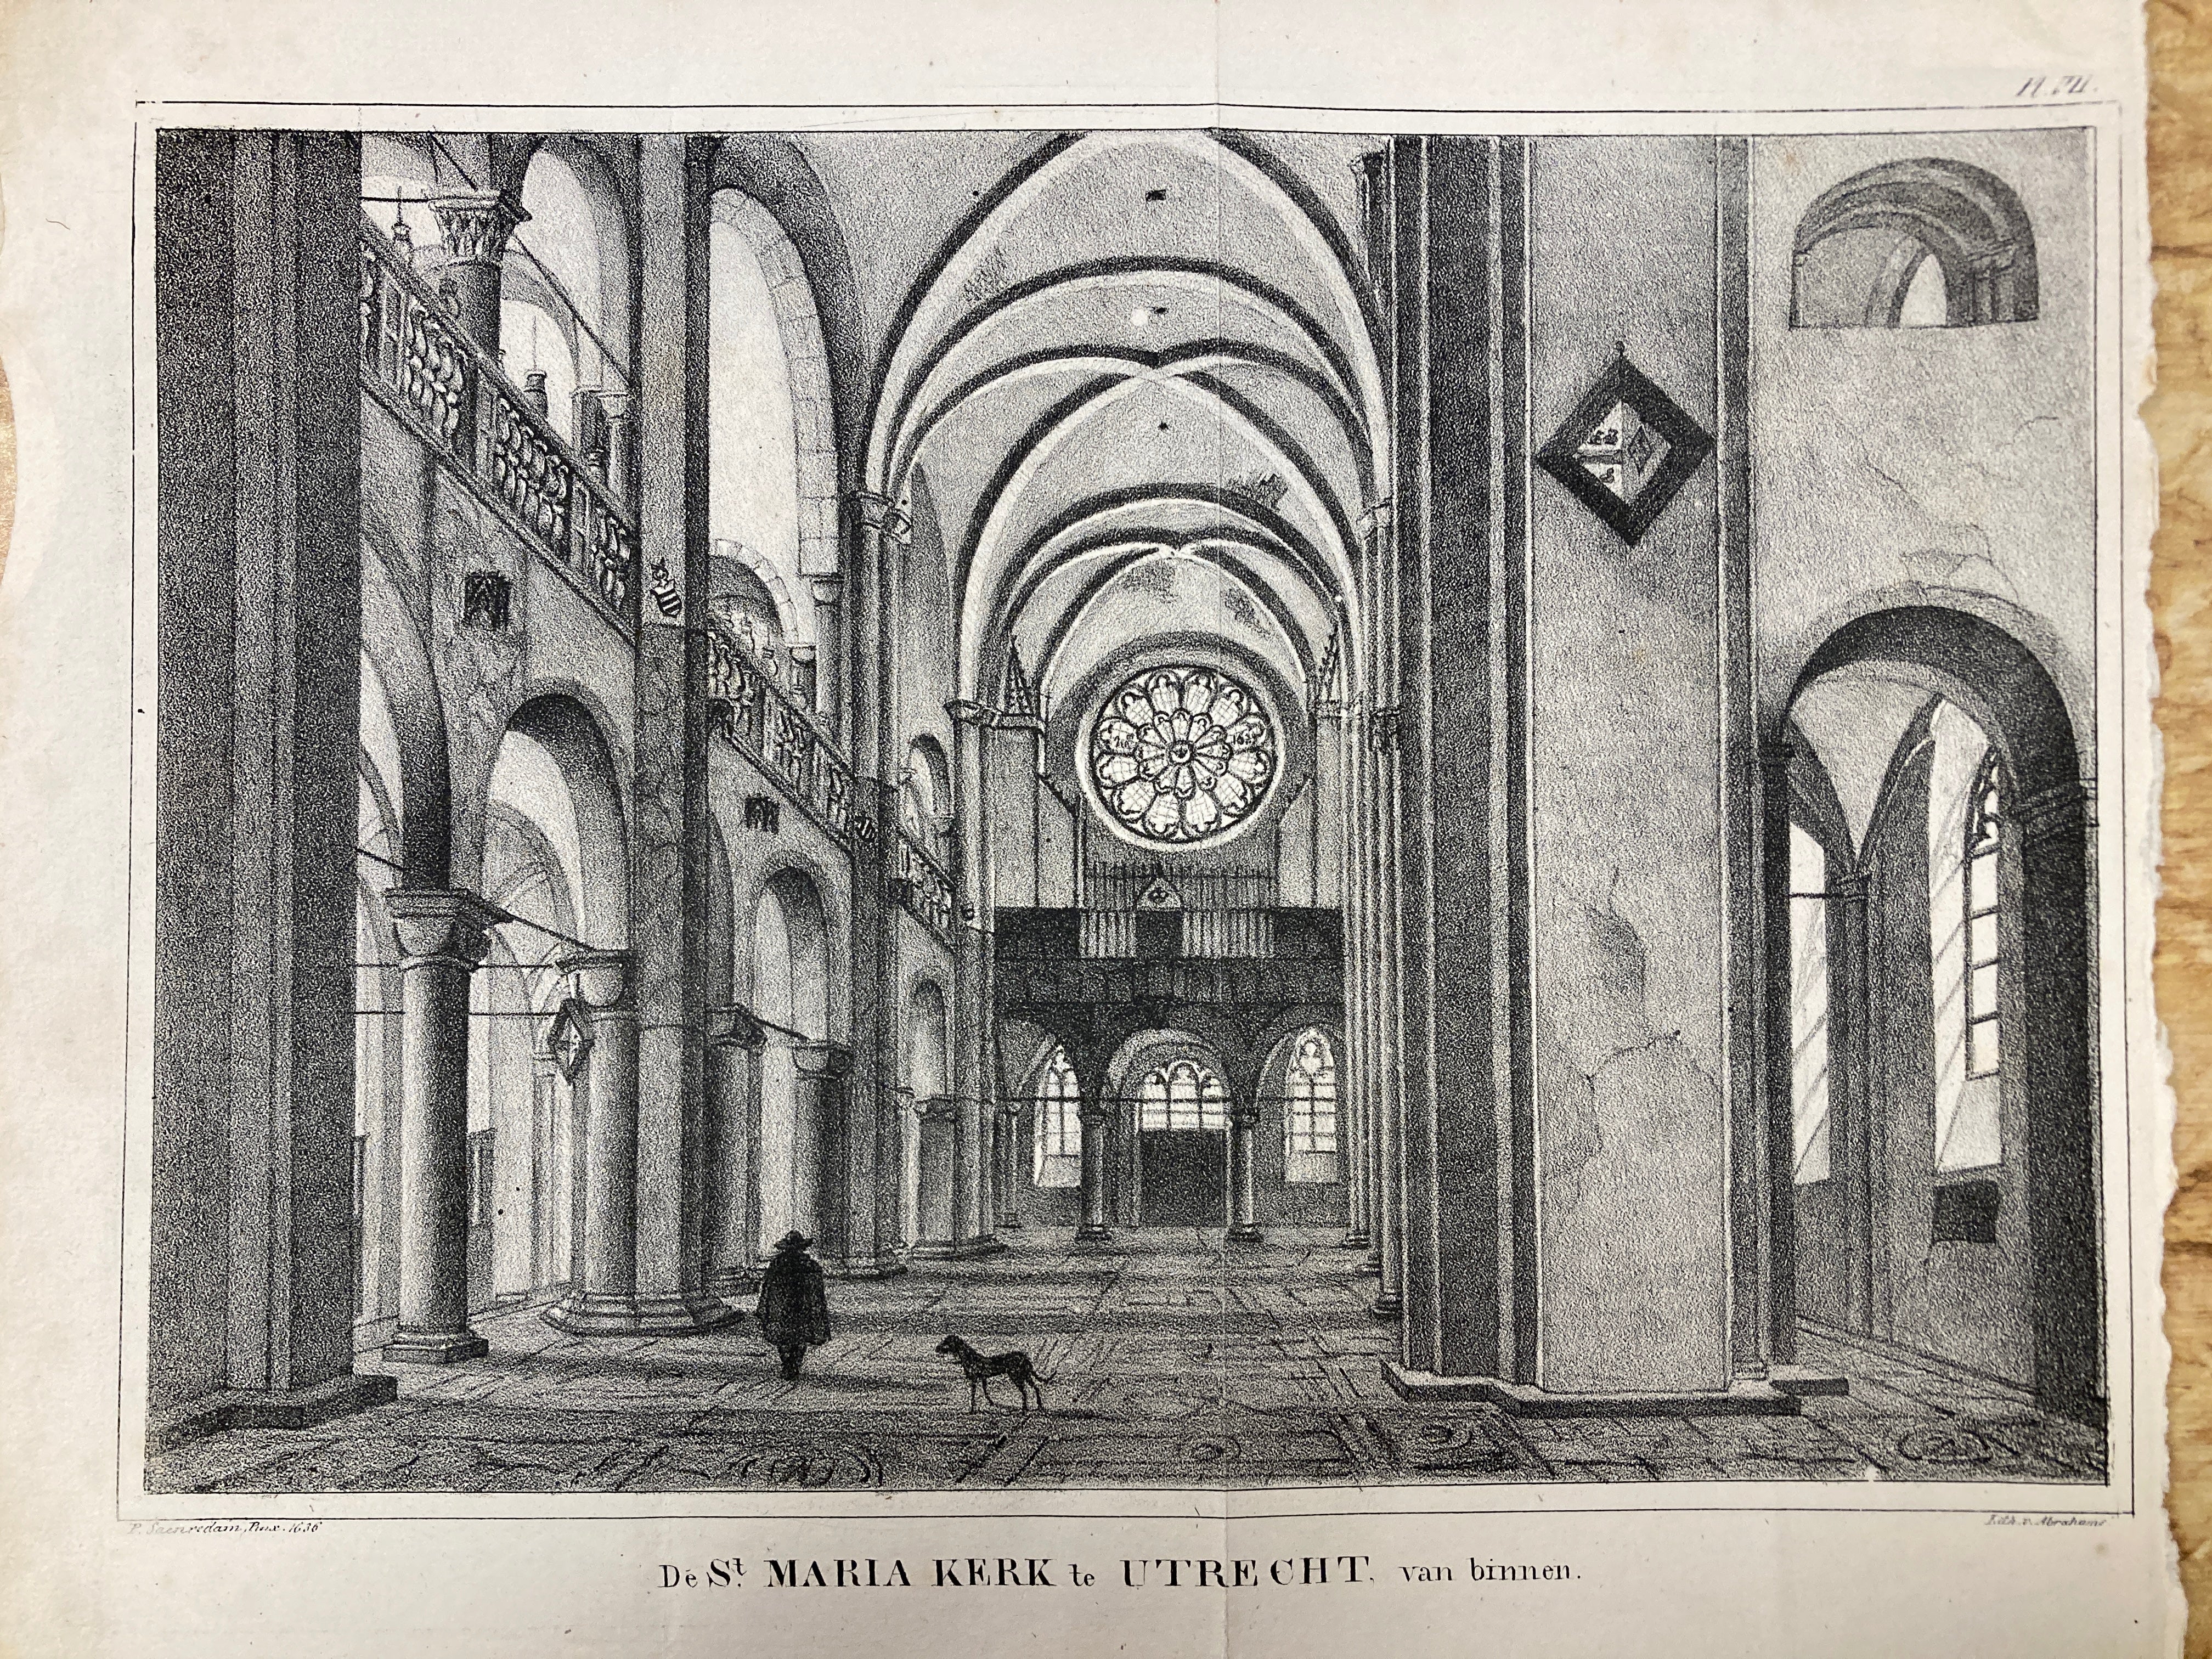 Interieur van de St. Maria kerk te Utrecht - circa 1840.